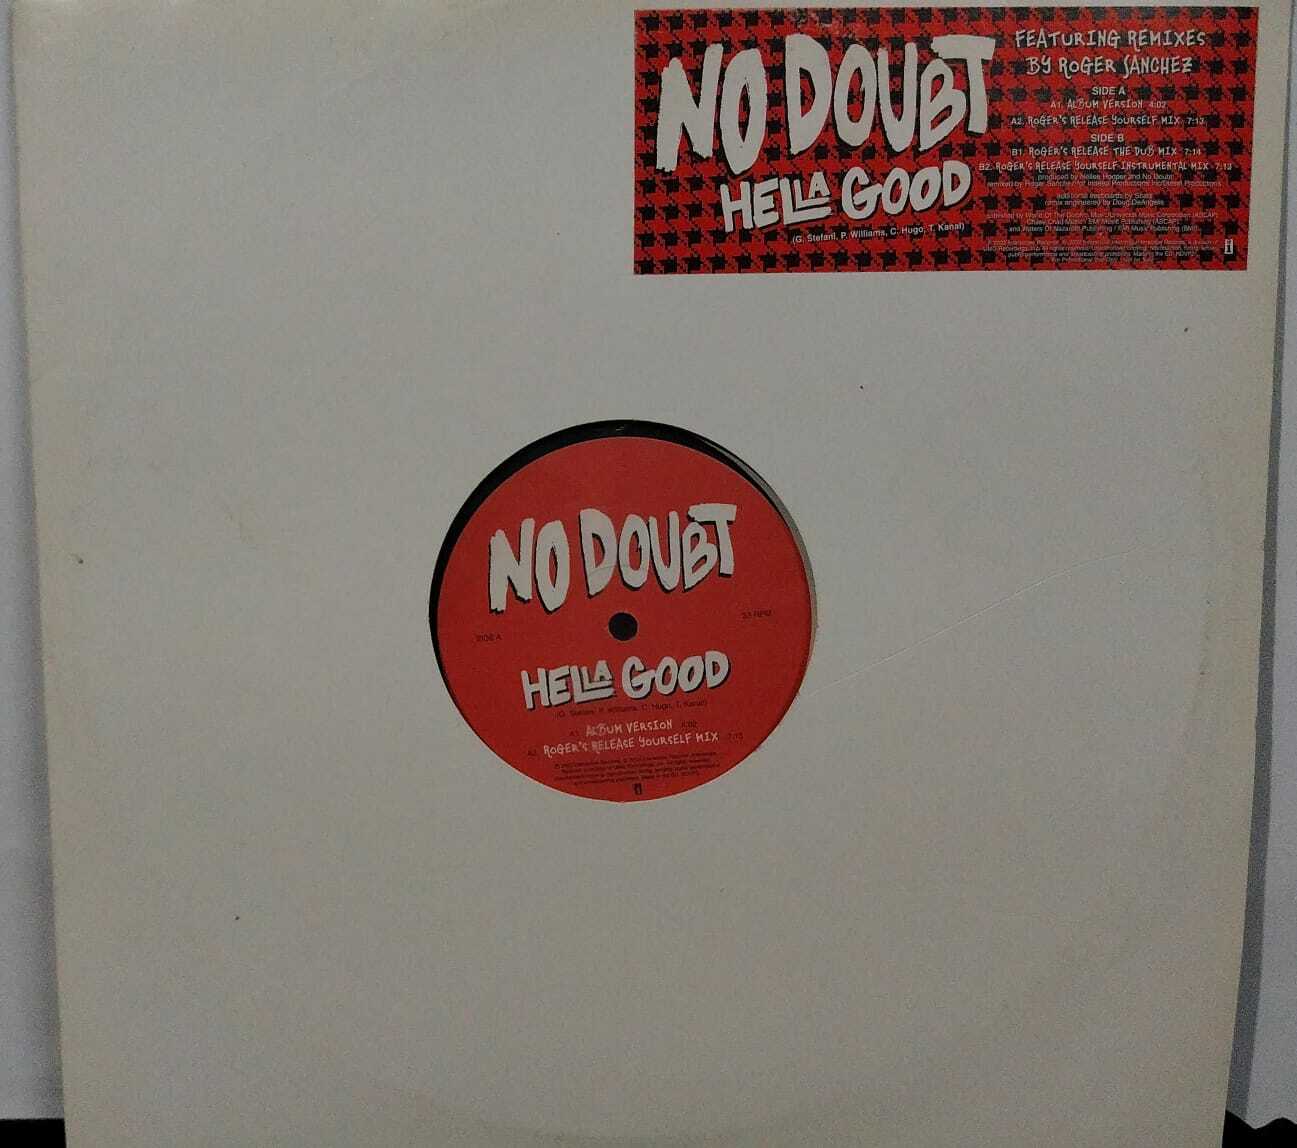 Vinil - No Doubt - Hella Good  - Roger Sanchez Remixes (EU)